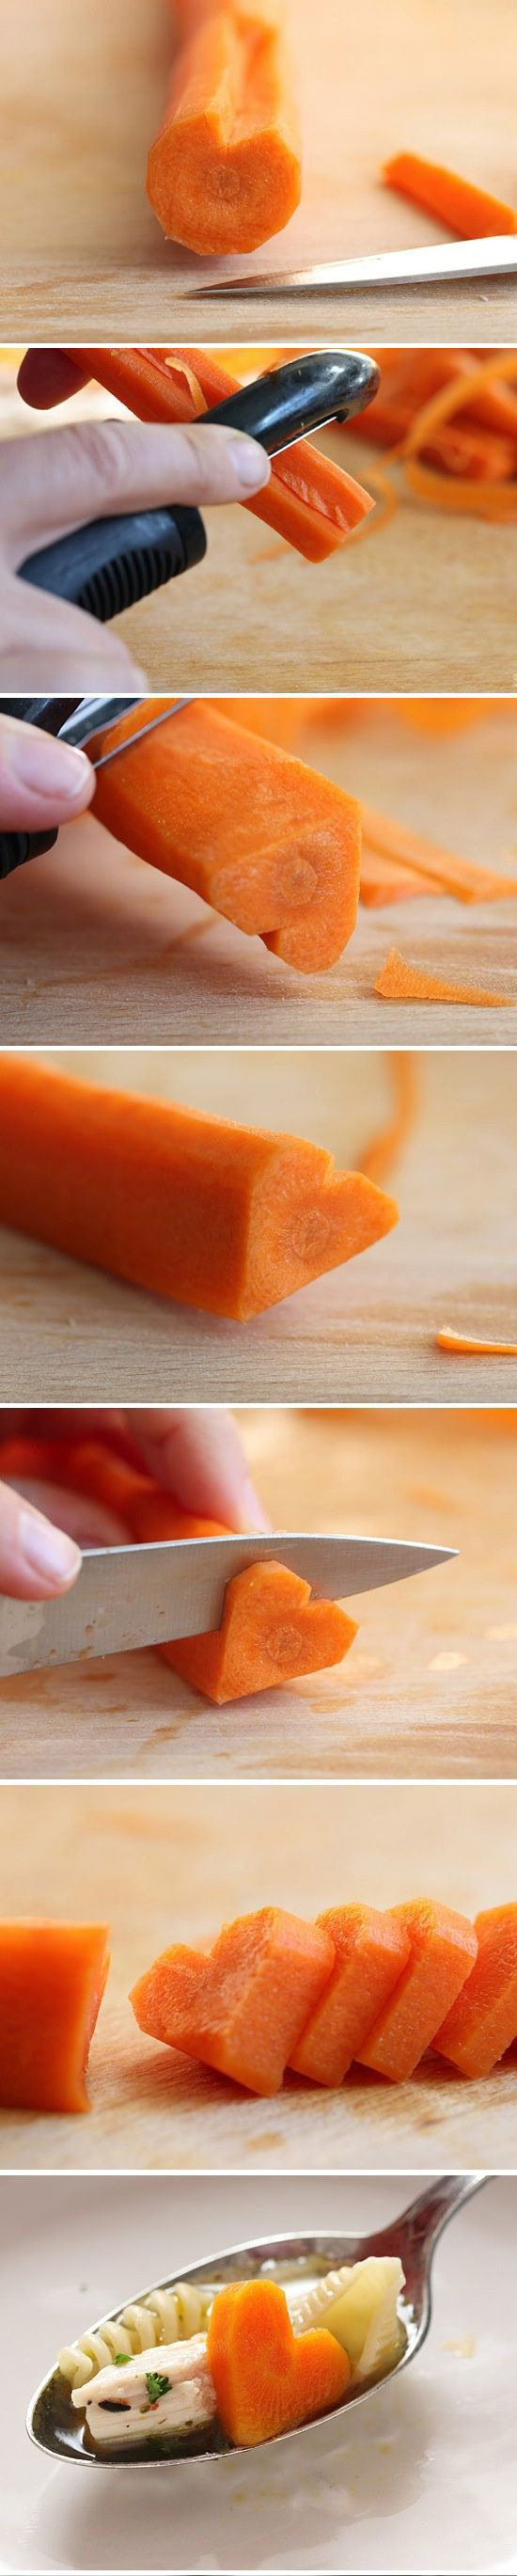 сердечко из моркови